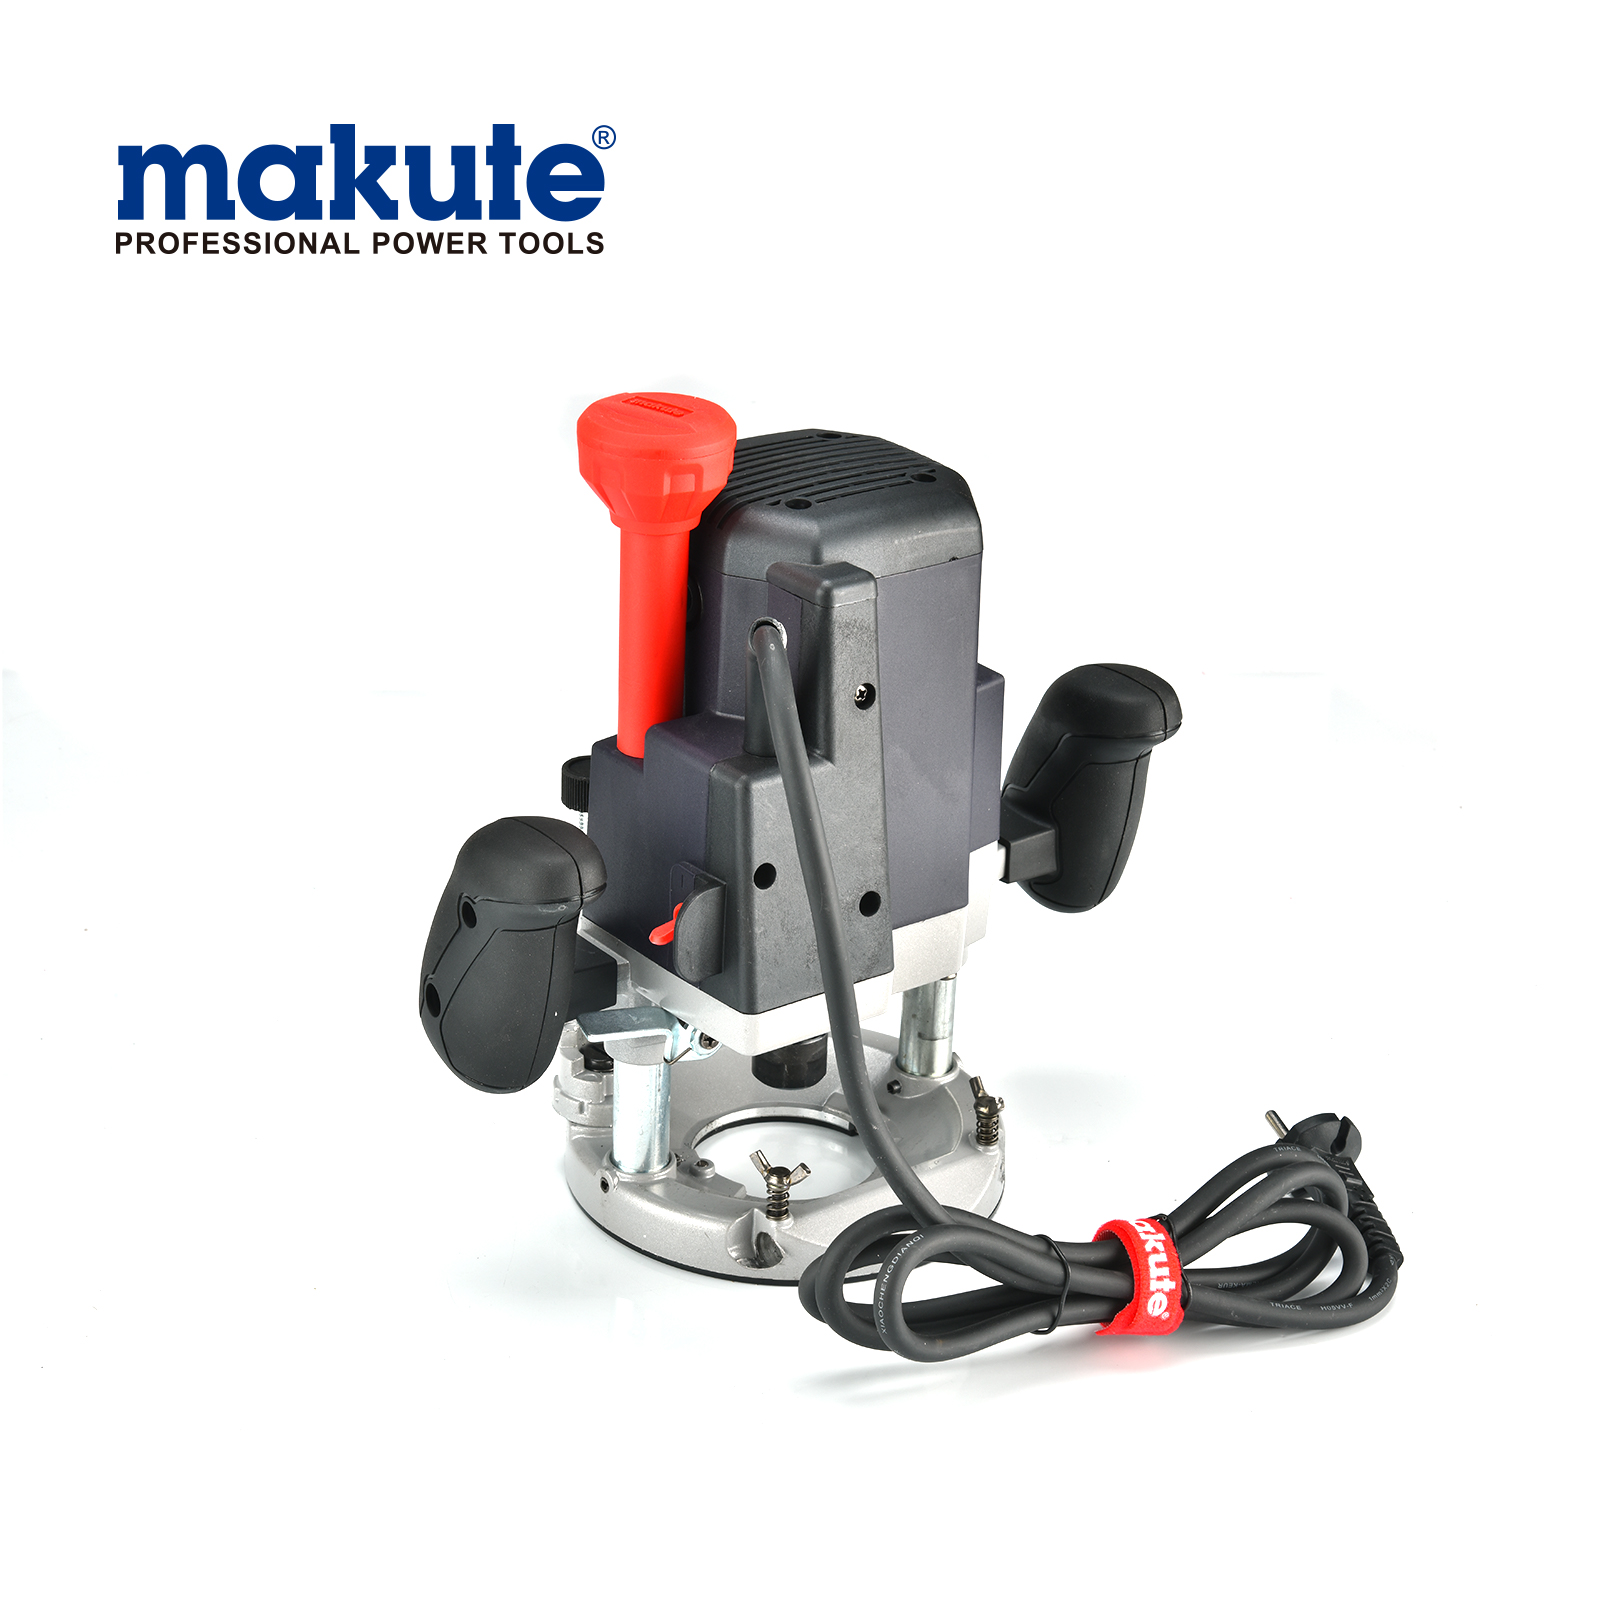 ER001 makute 12mm herramientas eléctricas mano tablas de madera motores recortadora enrutador eléctrico de alta calidad